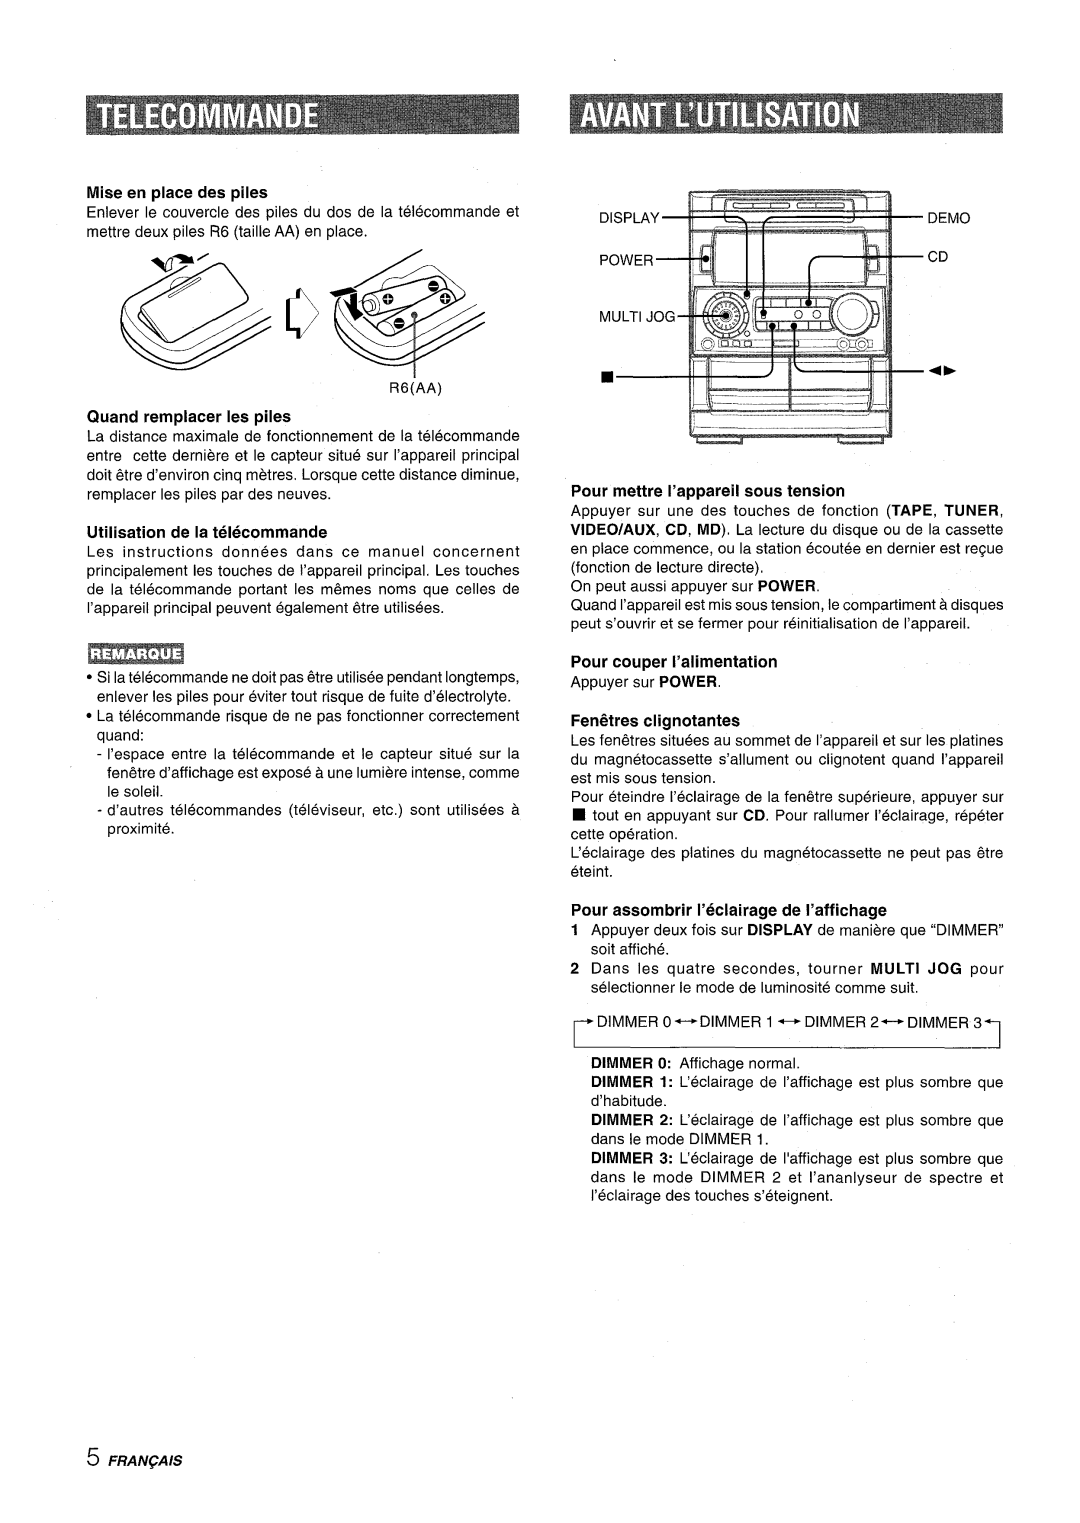 Aiwa NSX-A909 Mise en place des piles, Quand remplacer Ies piles, Utilisation de la telecommande, Feni5tres clignotantes 